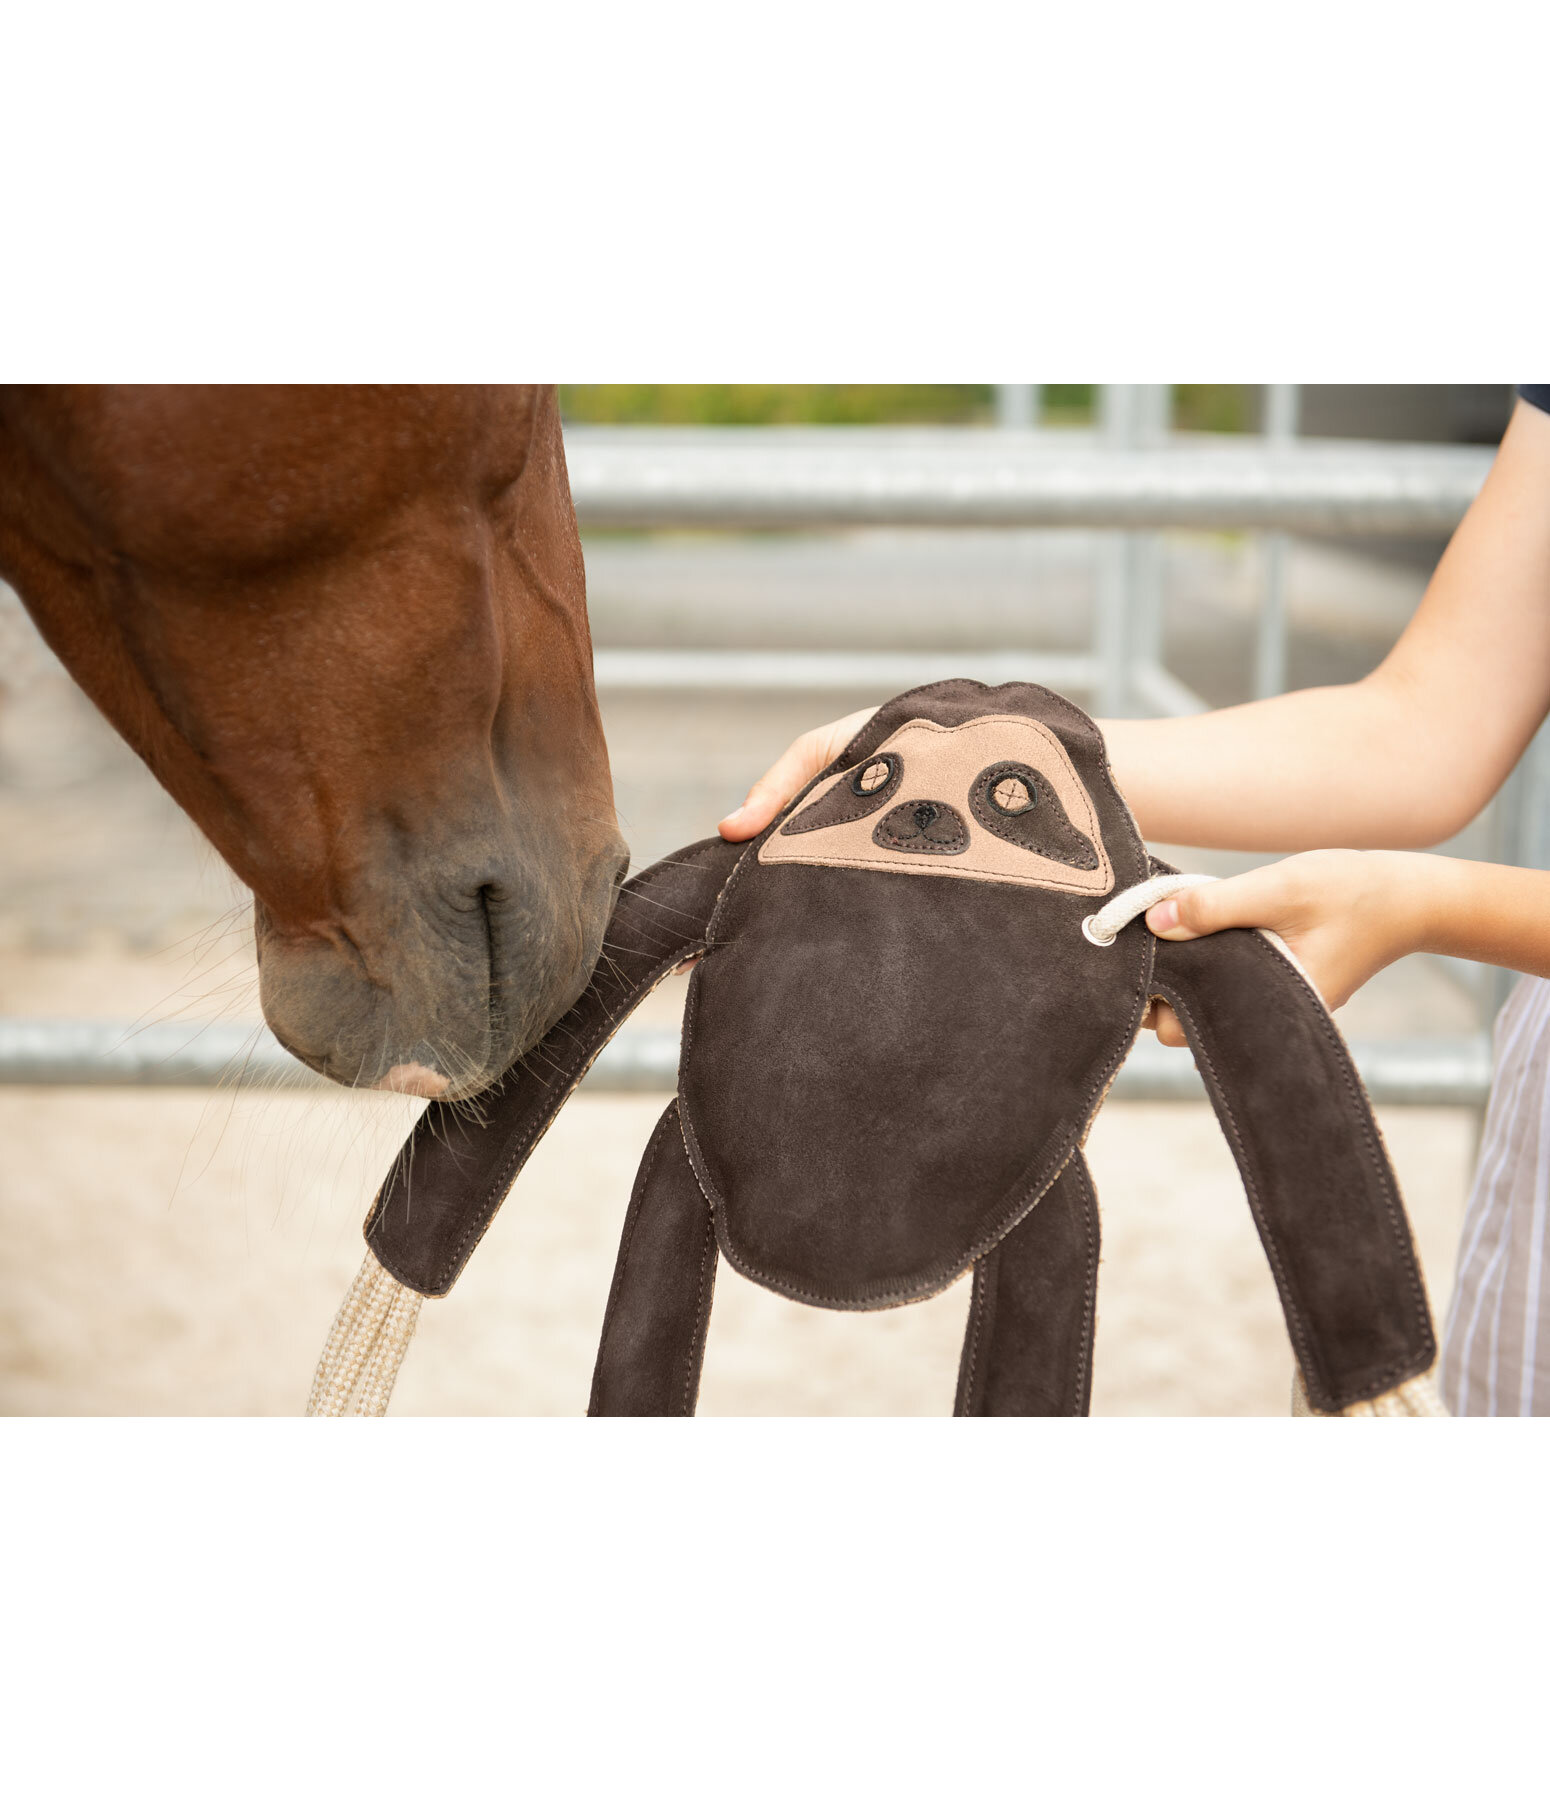 Jouet paresseux pour cheval - Equipement pour l'écurie & le manège